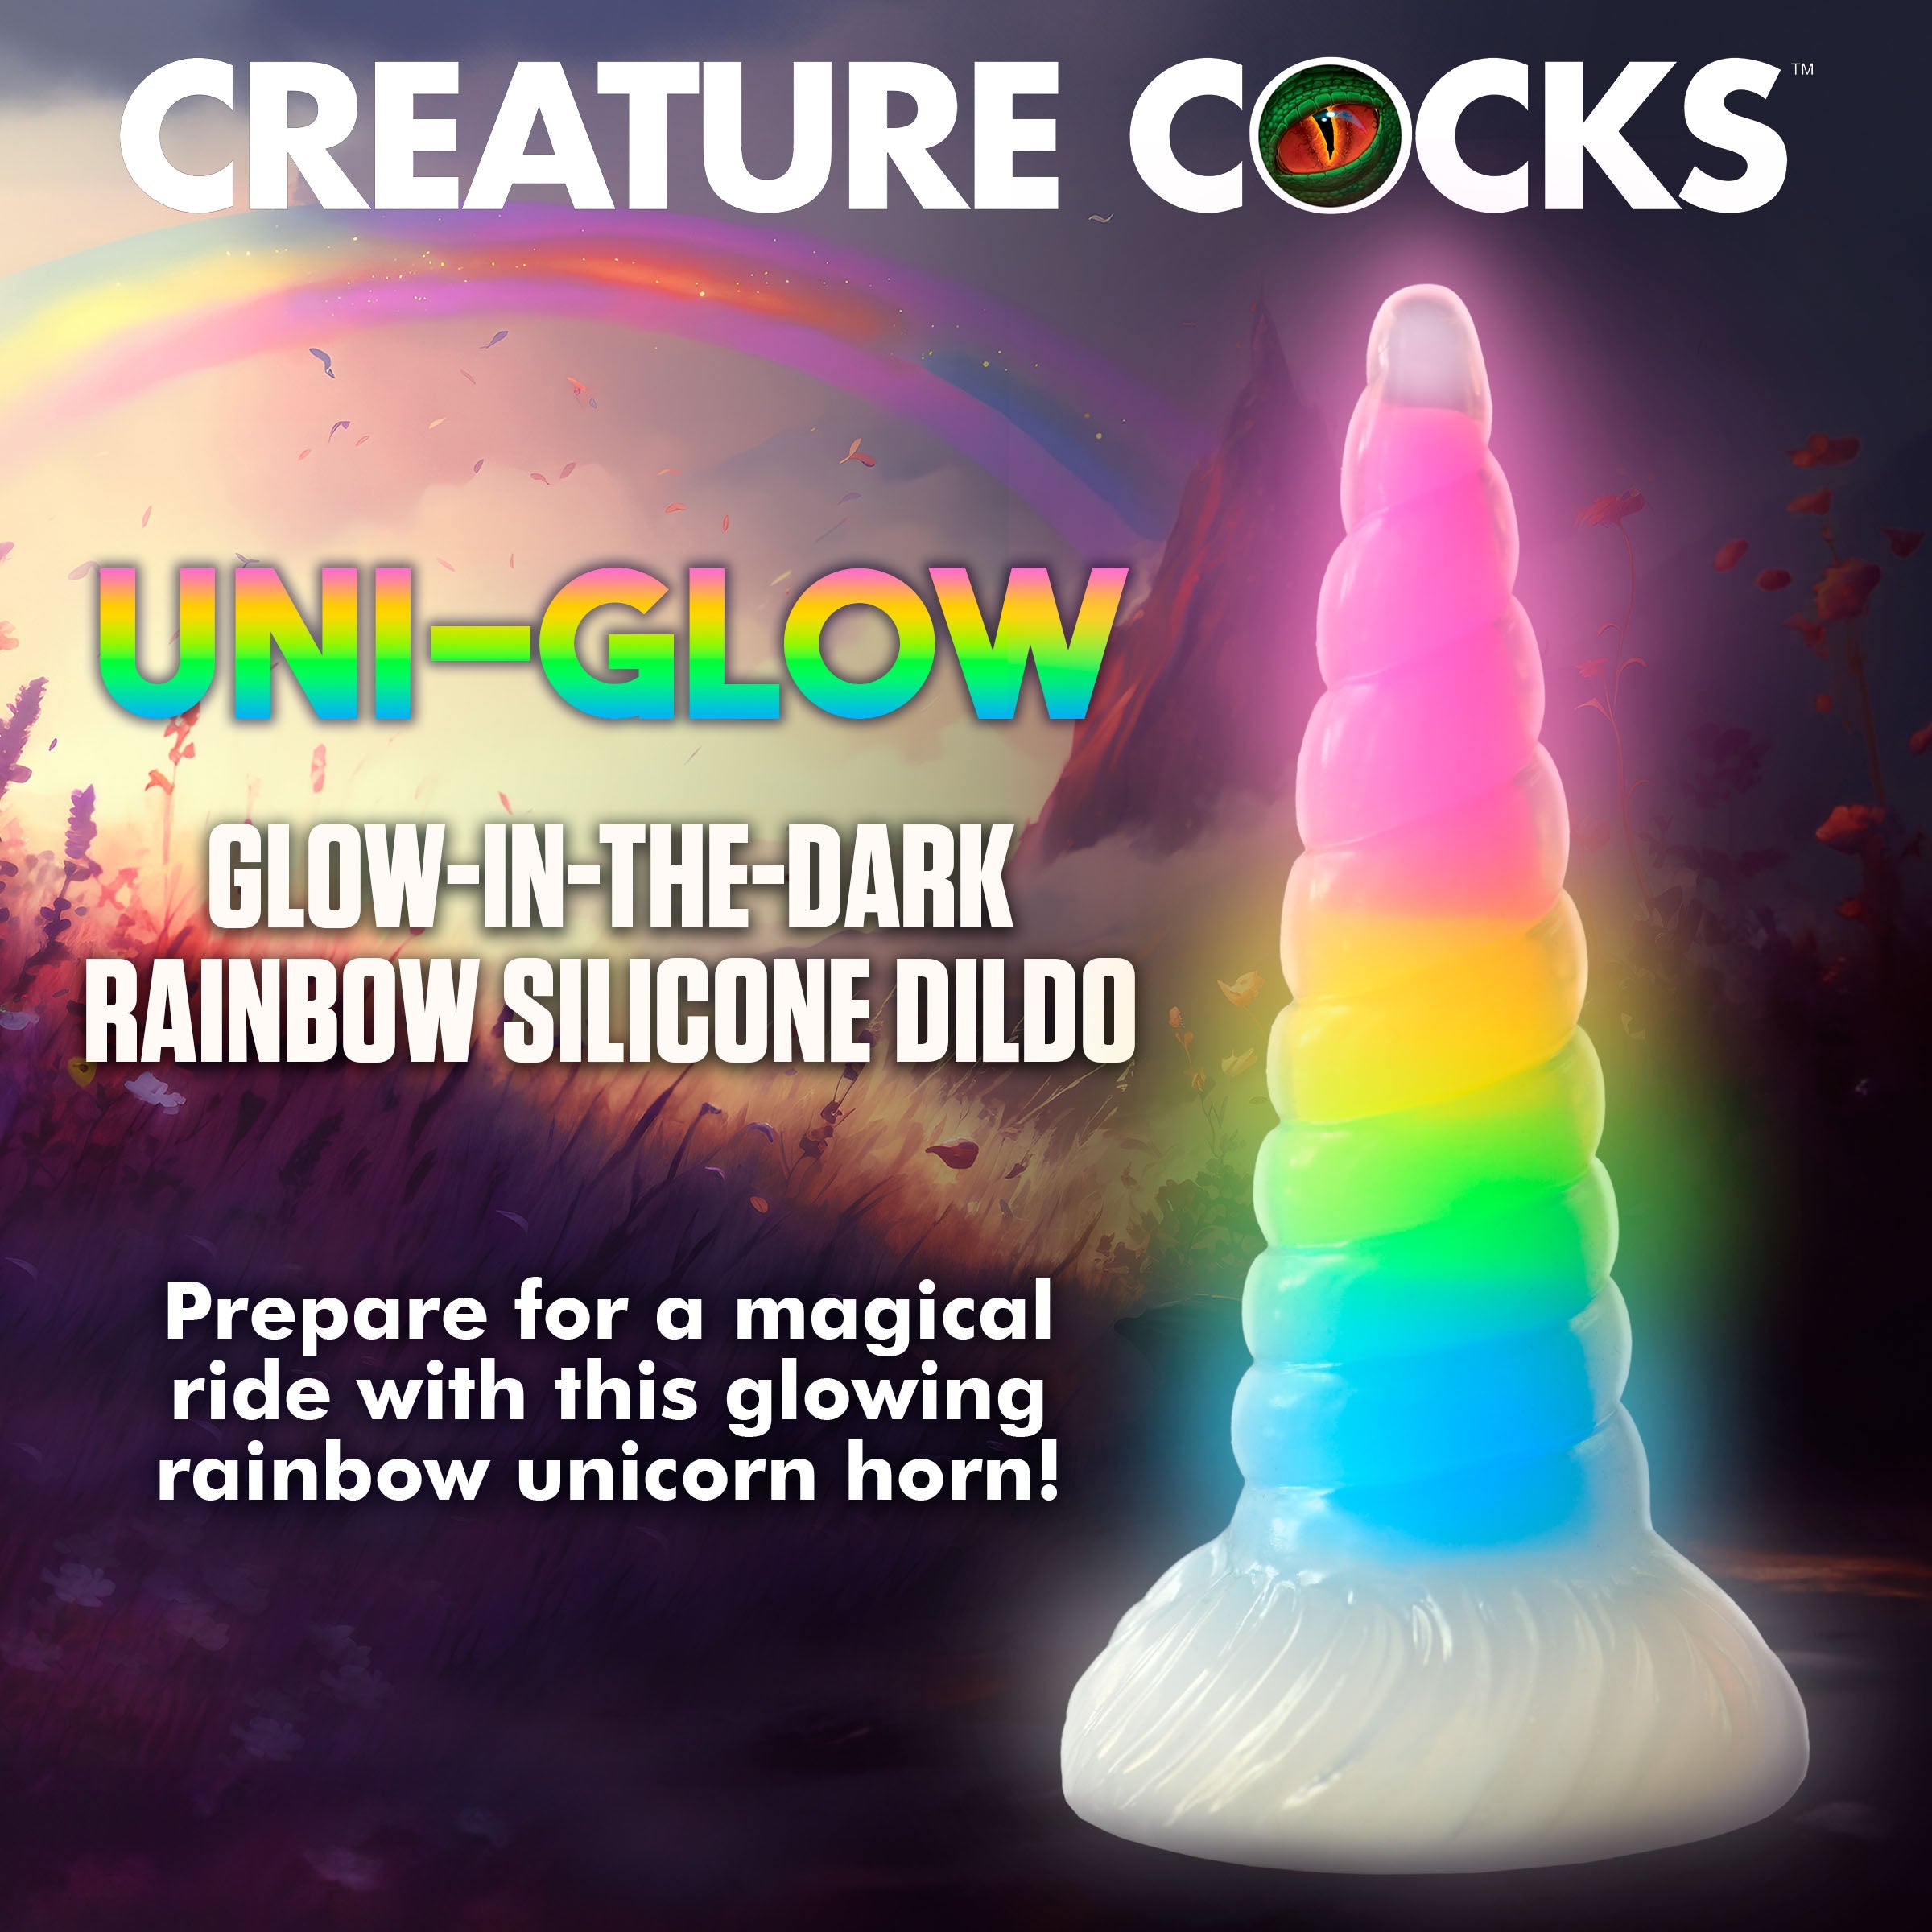 Uni-Glow Glow-In-The-Dark Rainbow Silicone Dildo